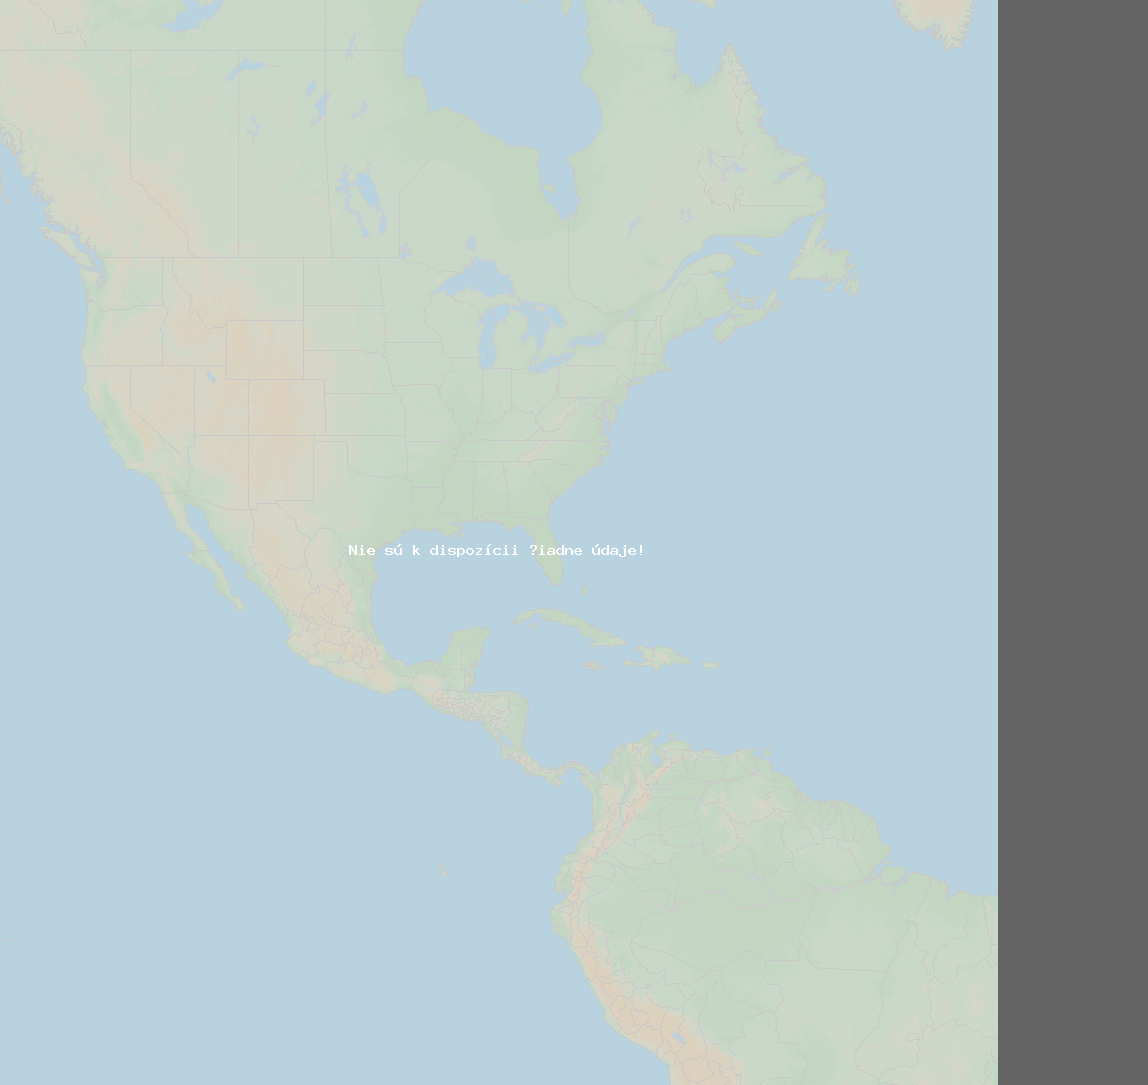 Pomer bleskov (Stanica indianapolis) North America 2021 Jún